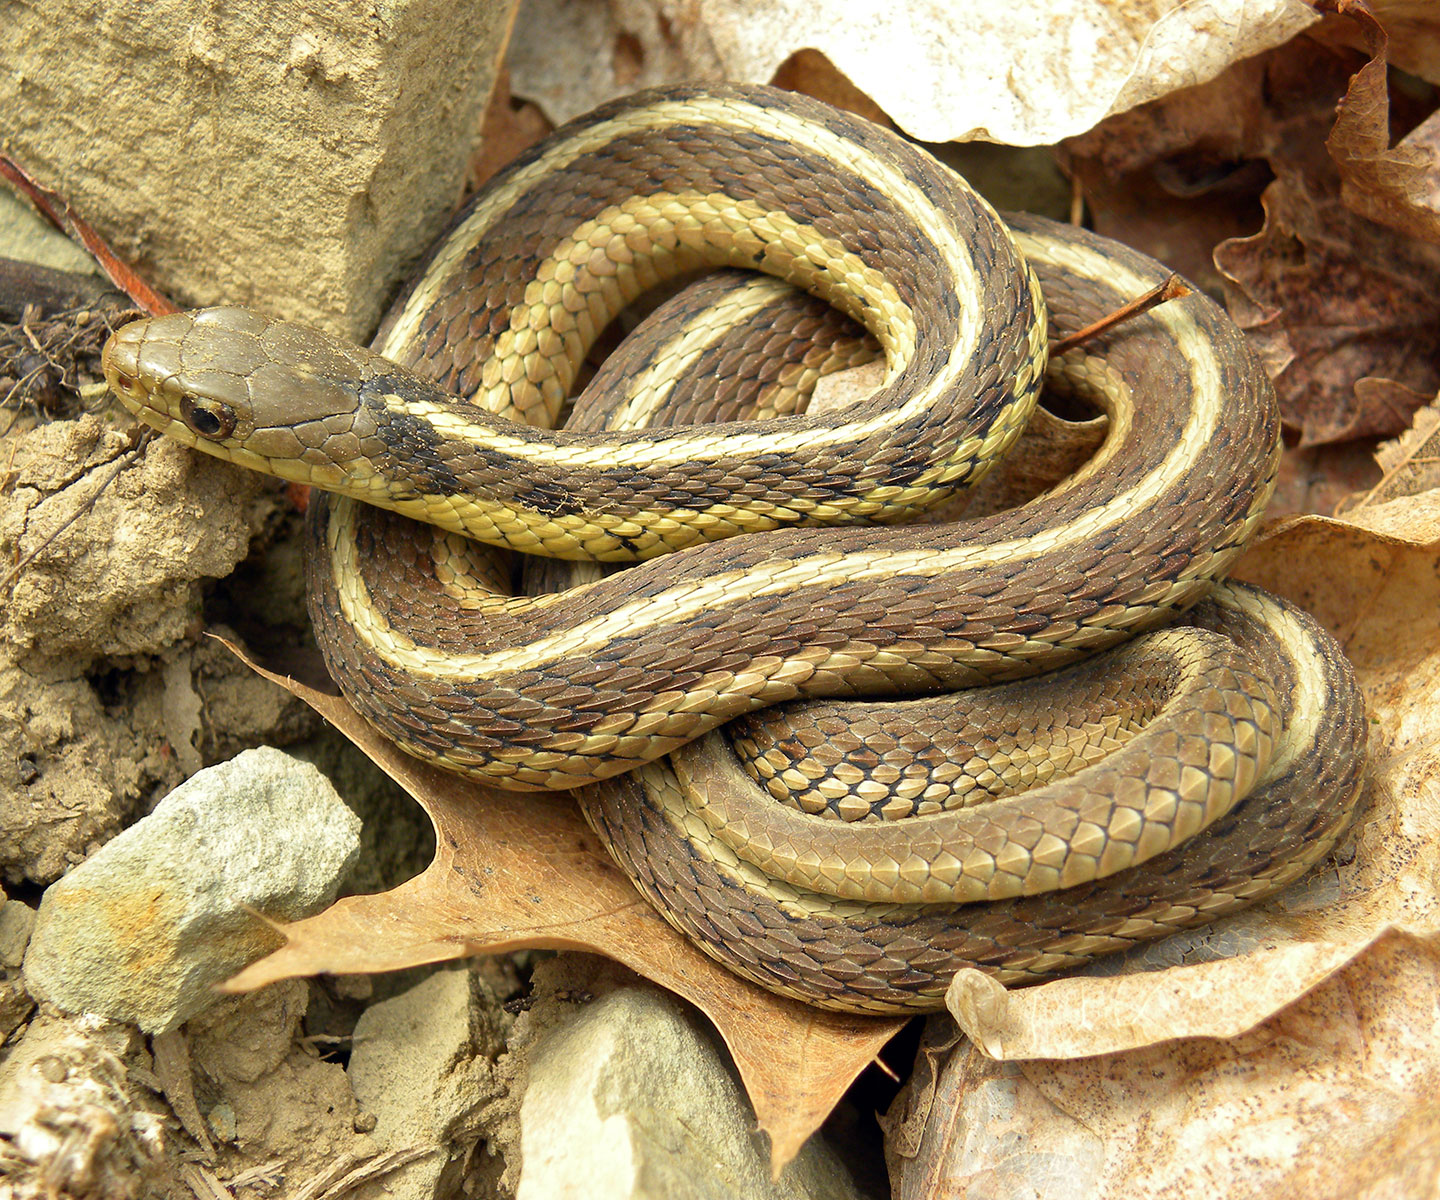 Garter Snakes Hibernate